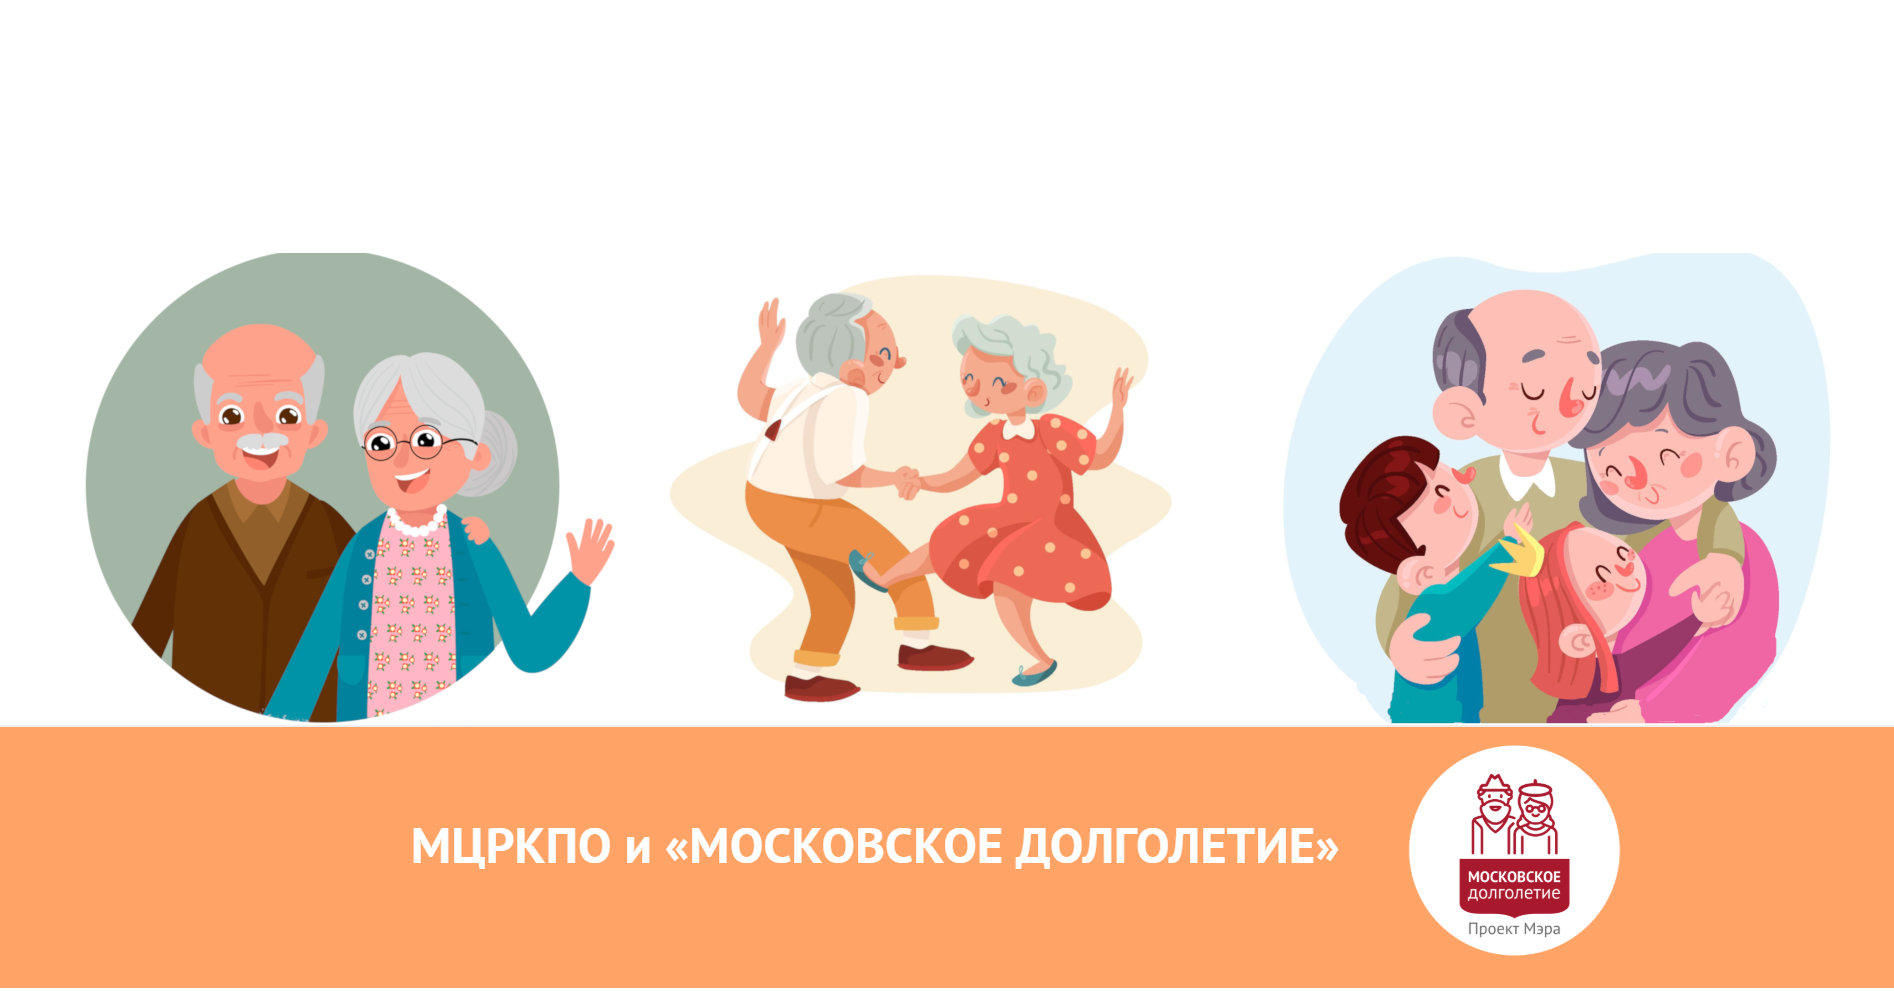 Как записаться в долголетие. Московское долголетие логотип. Активное долголетие рисунок. Московское долголетие рисунок. Активное долголетие плакат.